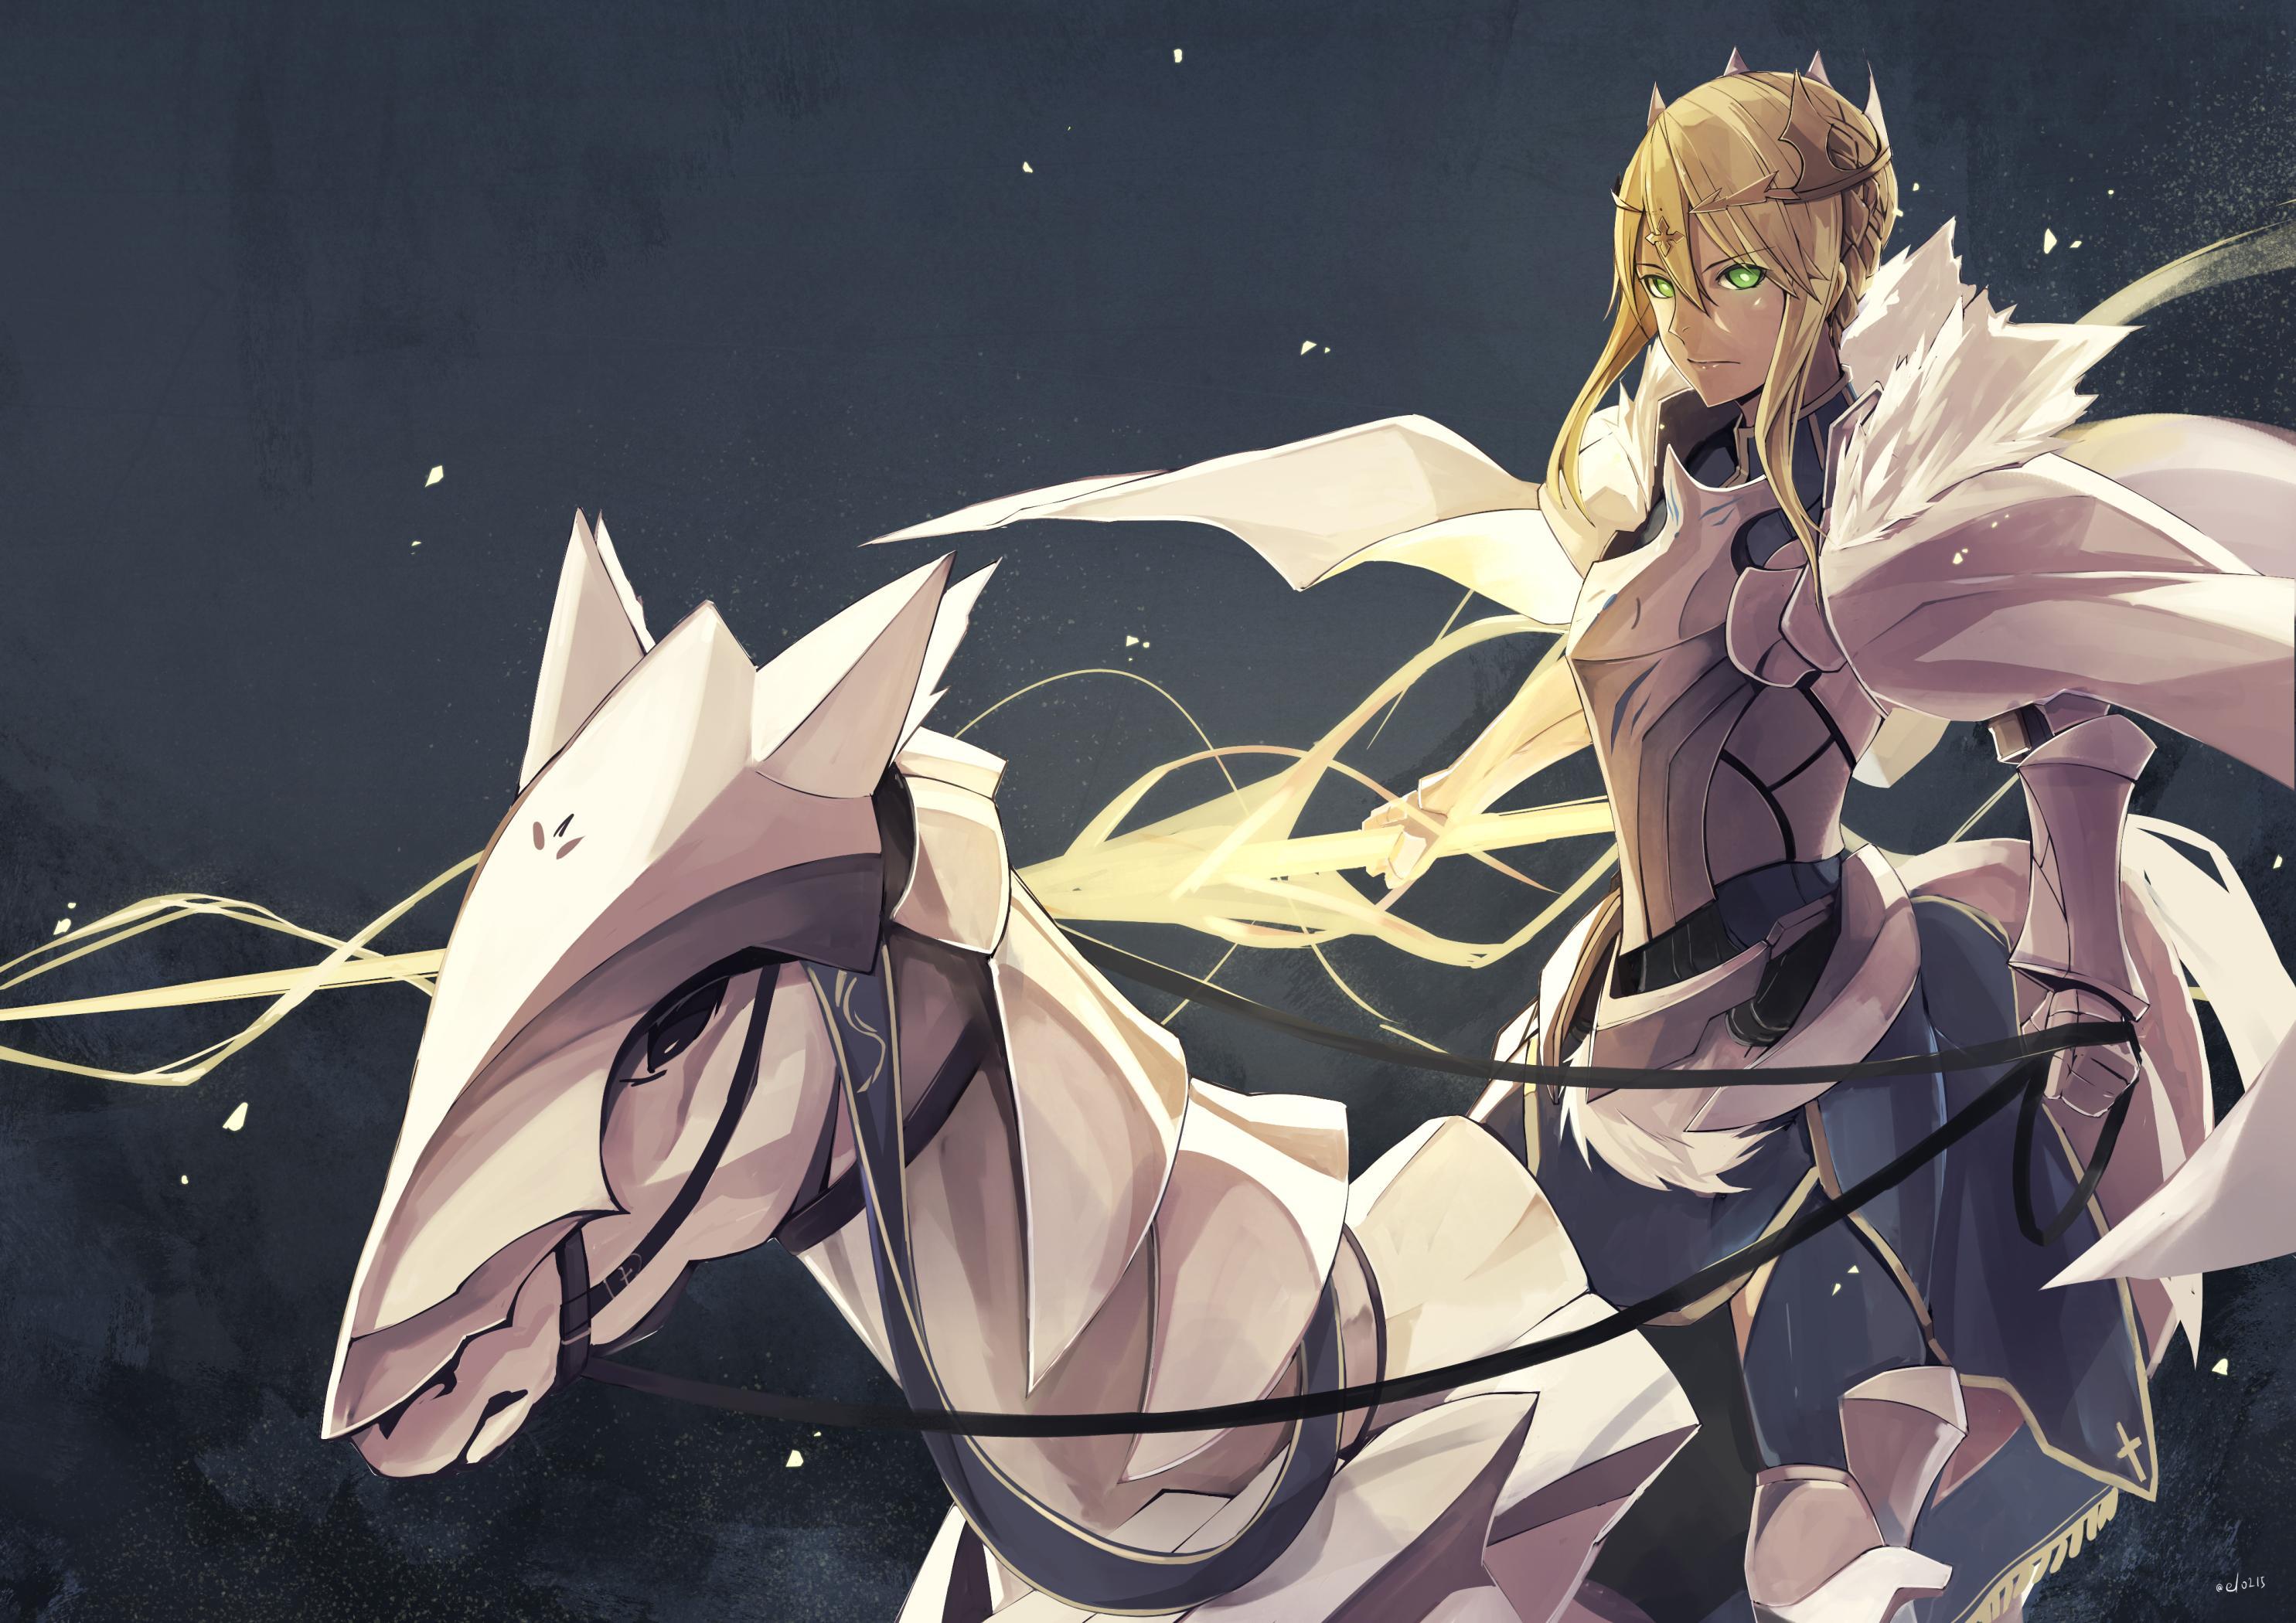 Lancer (Artoria Pendragon) (Fate Stay Night) Anime Image Board